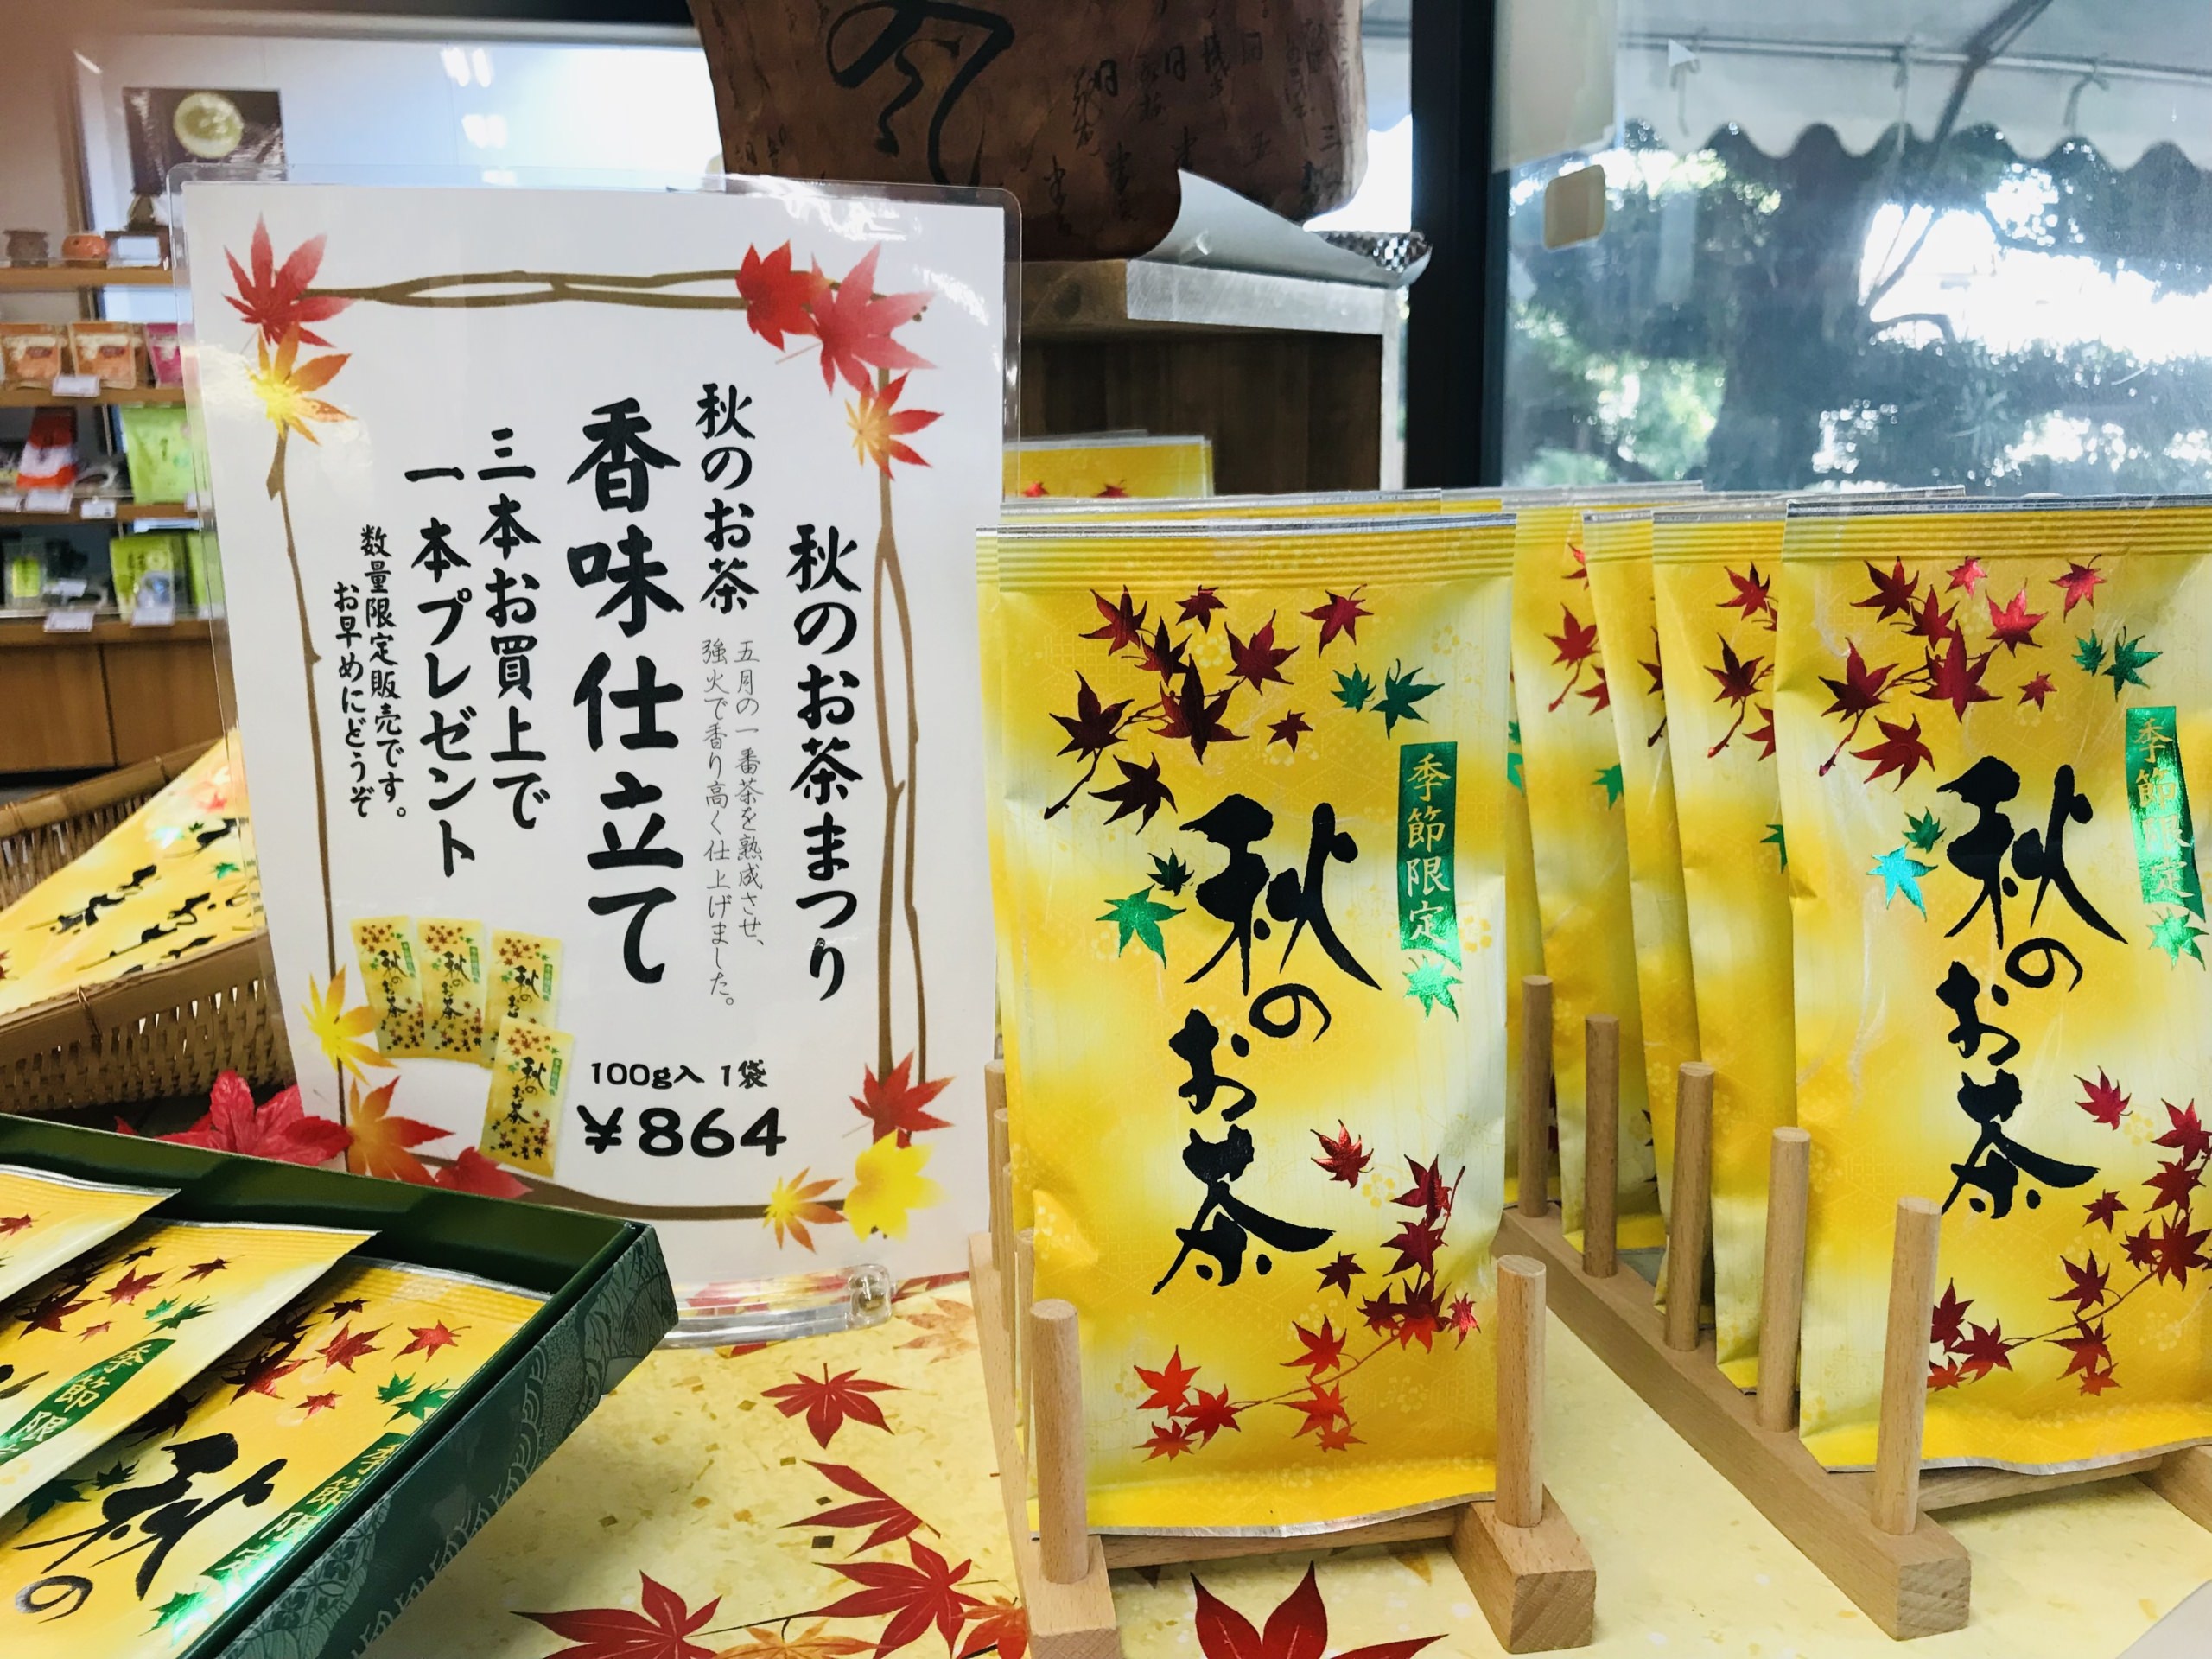 京都の町家をお持ち帰り。老舗煎餅の京煎堂が
京町家を装ったお菓子2種を10月1日に全国一斉発売